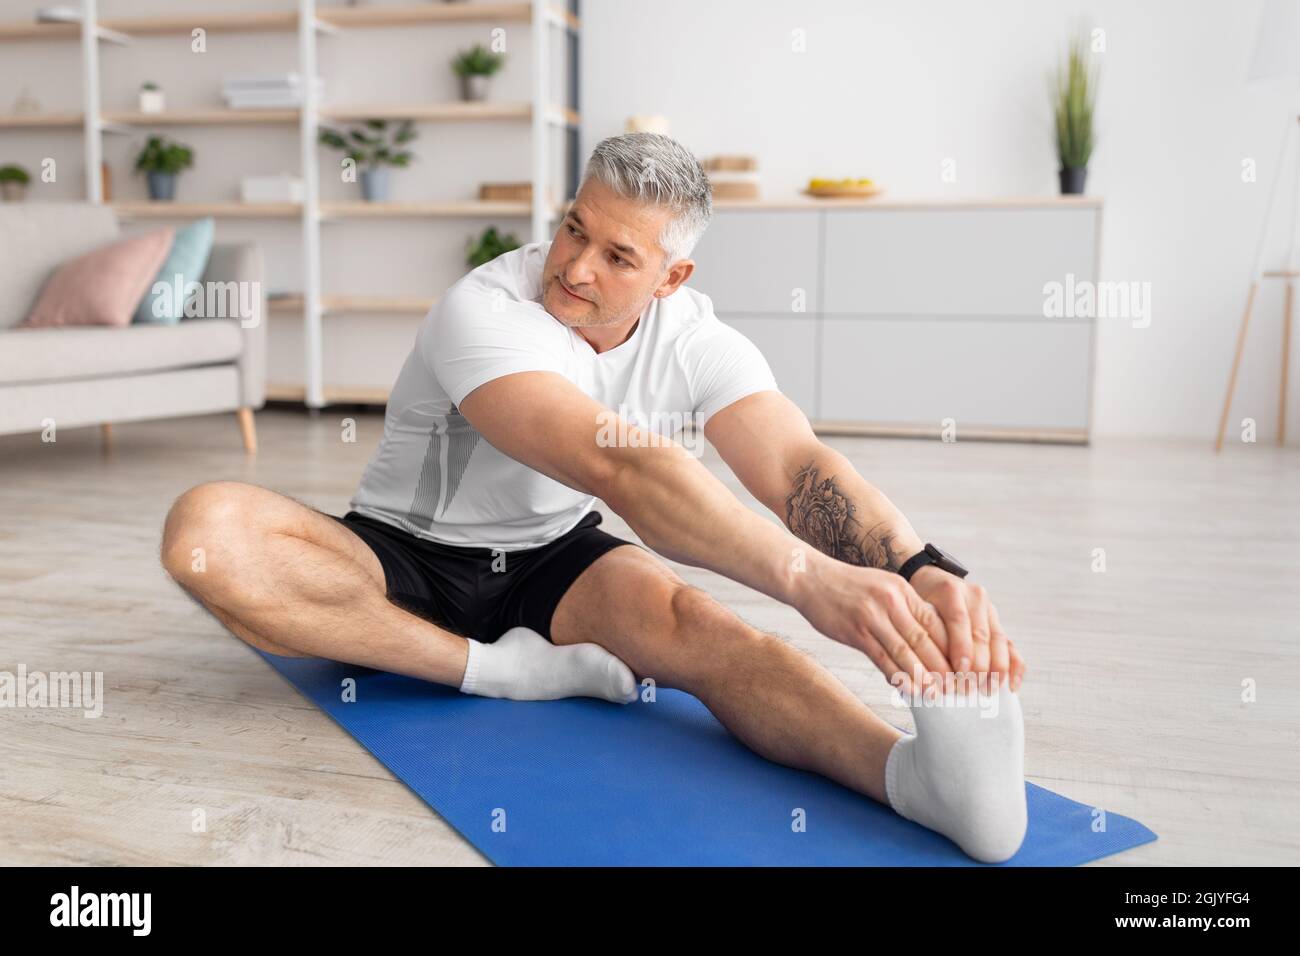 Aktiver Lebensstil. Sportlicher reifer Mann, der sich das Bein streckt, auf einer Yogamatte im Wohnzimmer arbeitet, Platz für Kopien Stockfoto